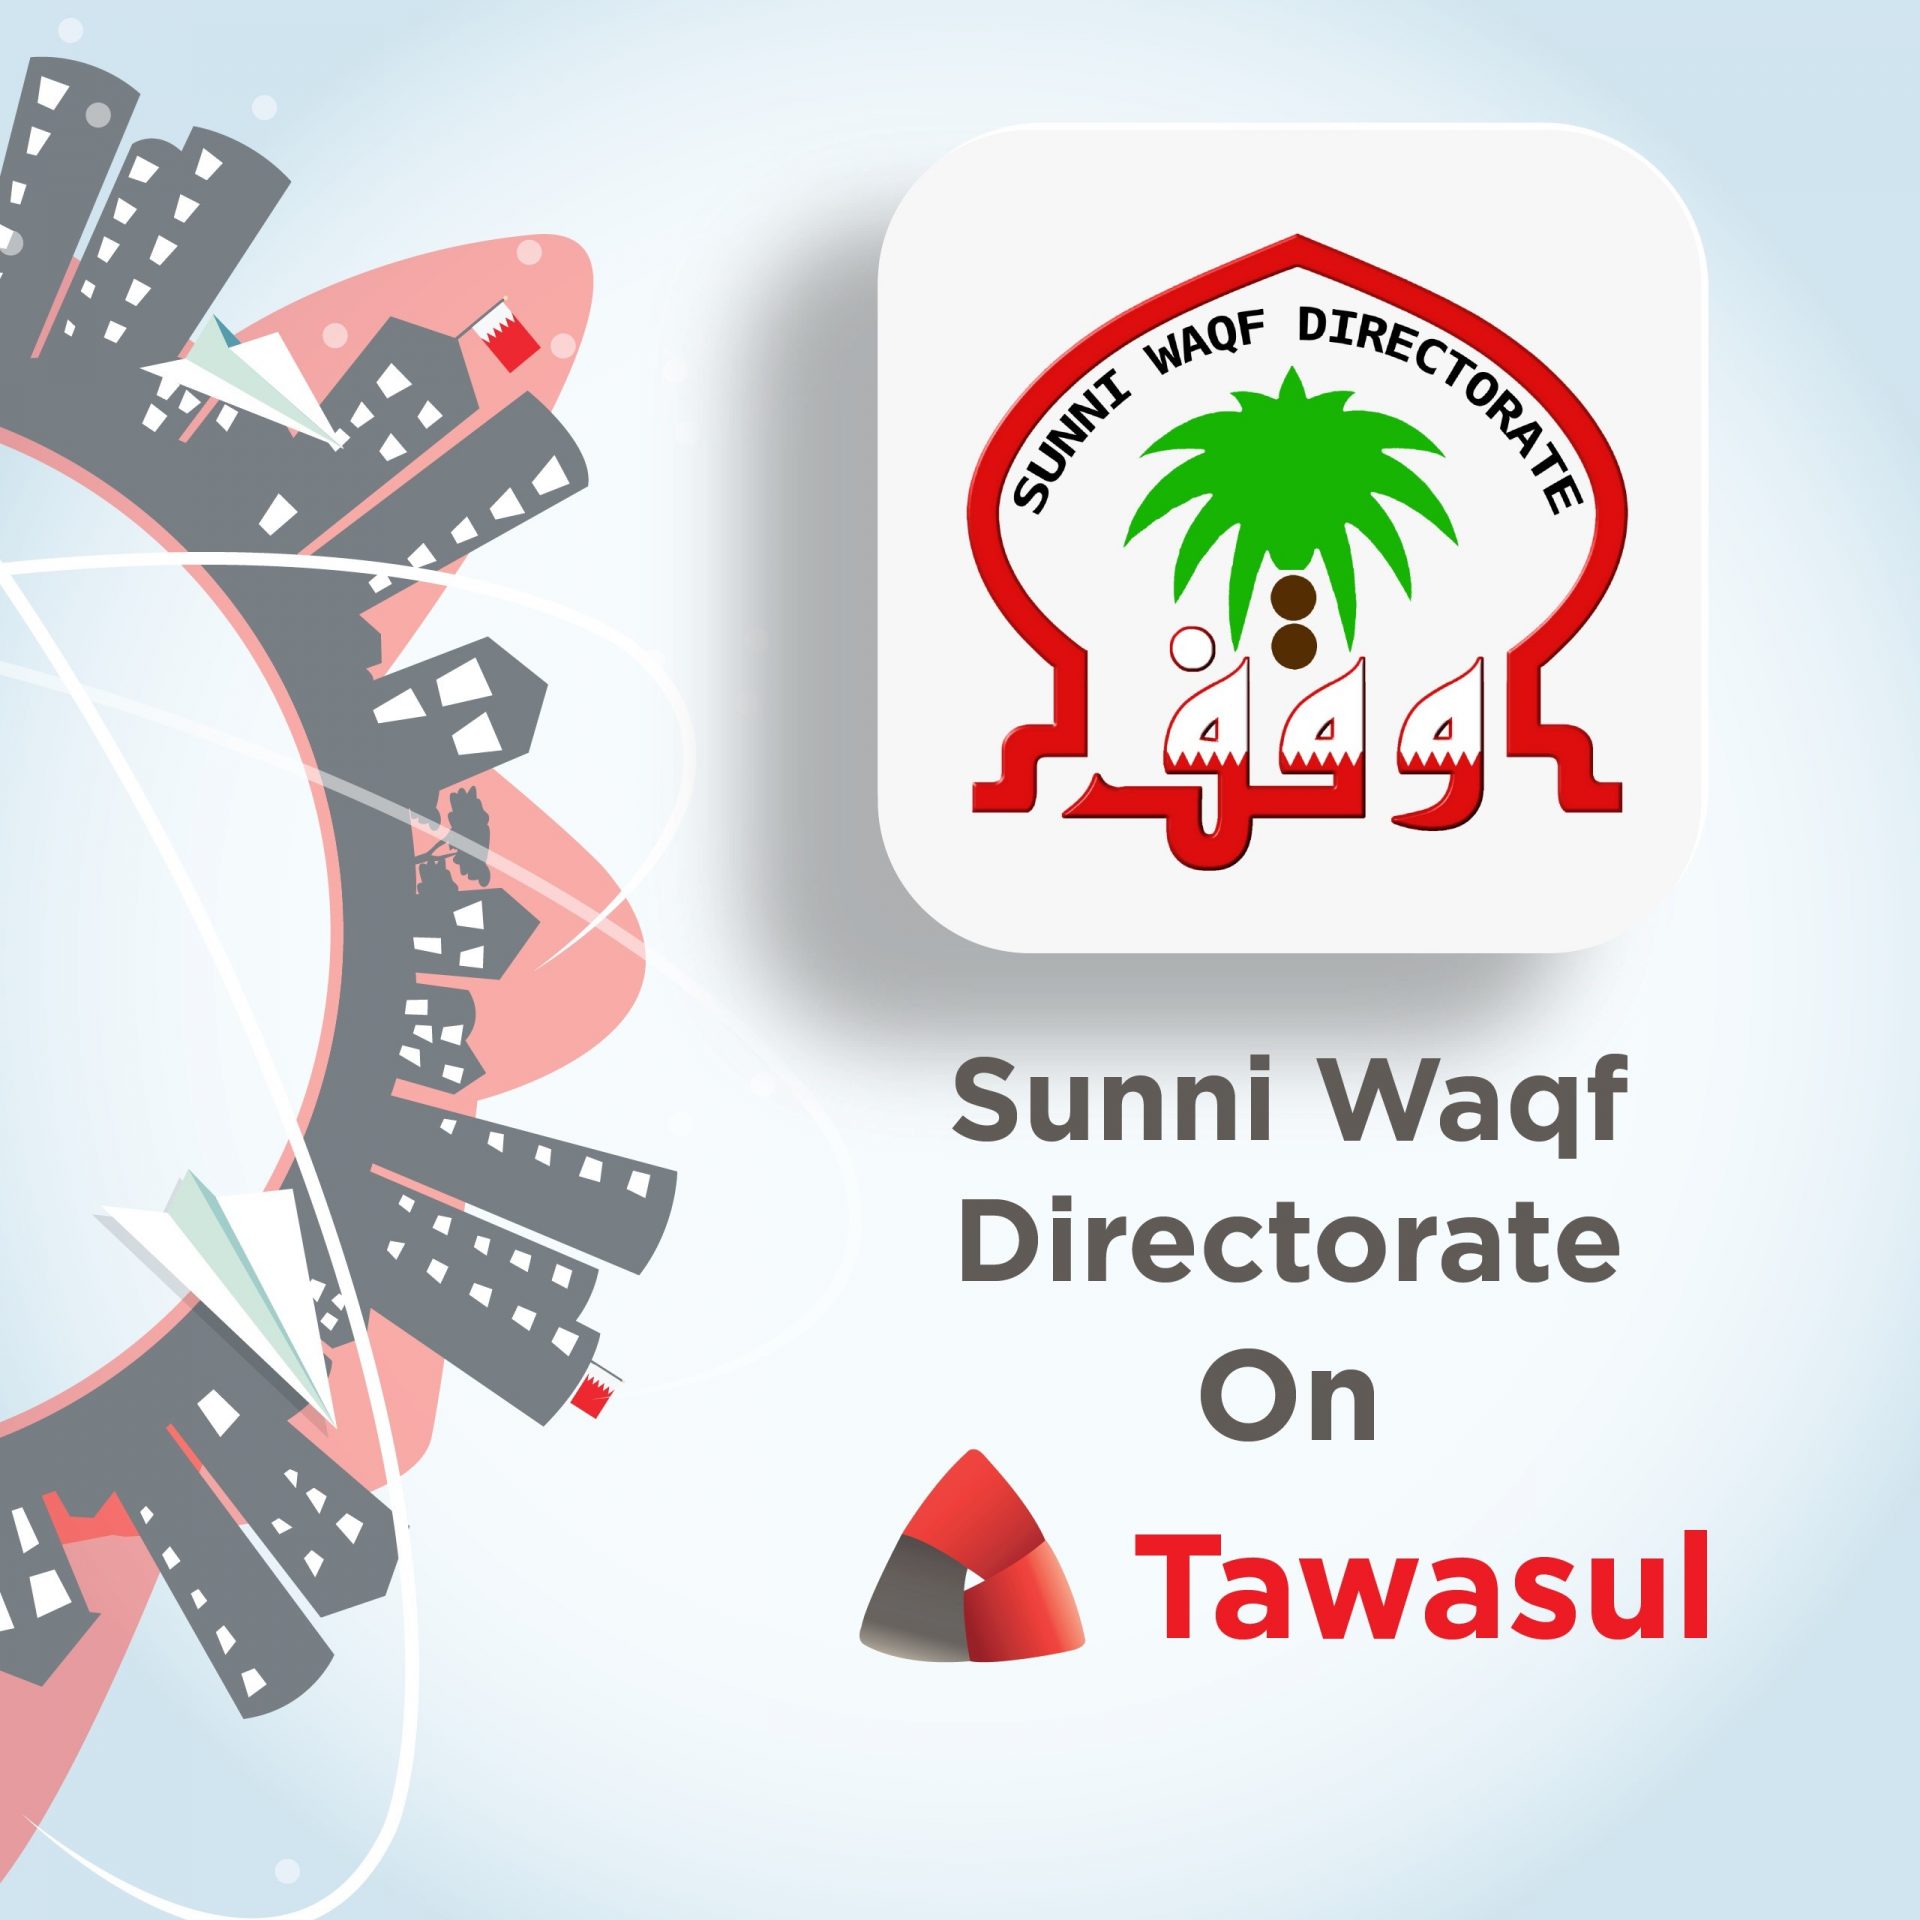 Sunni Waqf Directorate